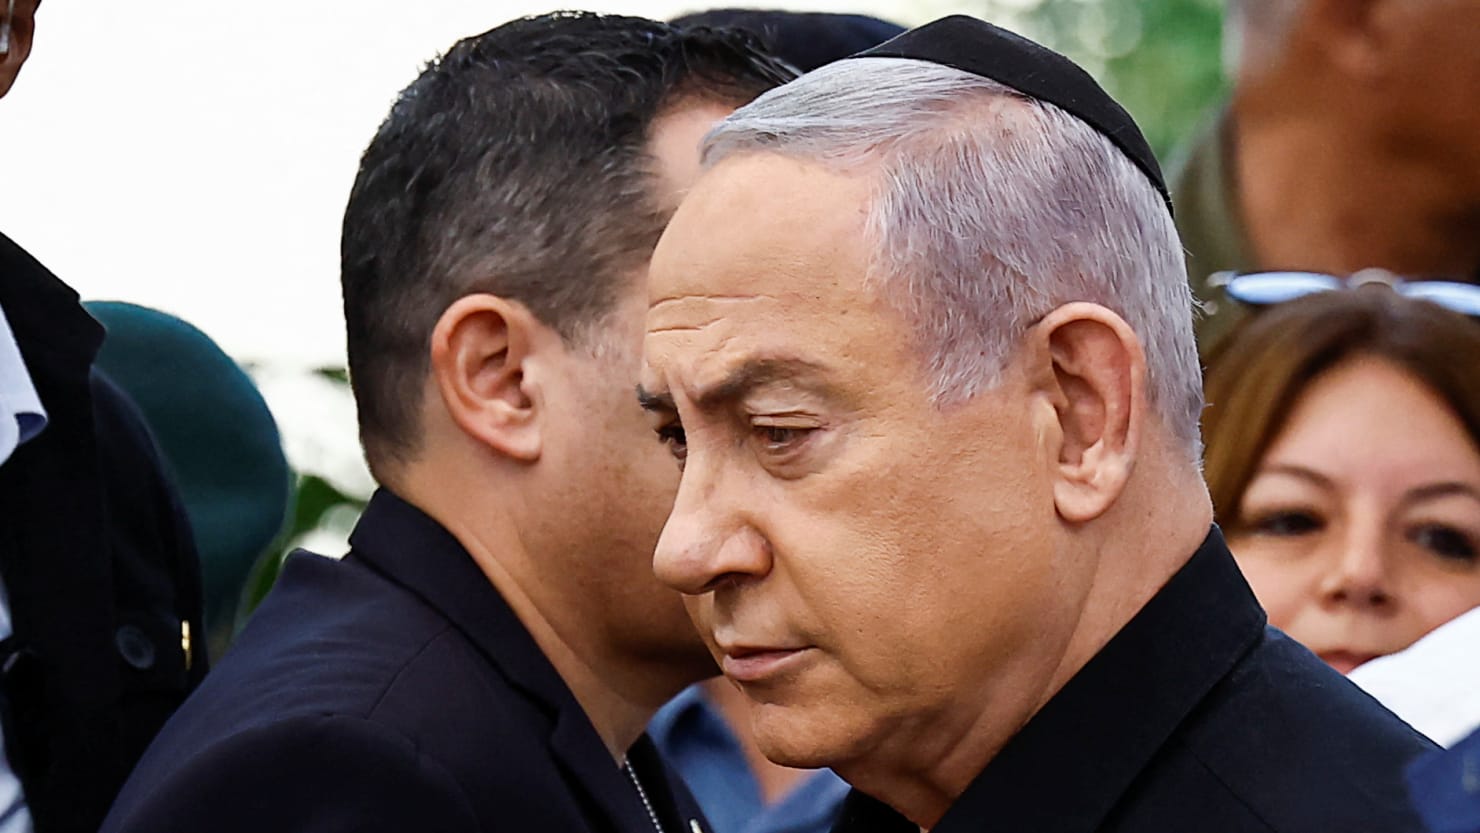 İsrailli yetkili Gadi Eisenkot, Benjamin Netanyahu'nun Gazze'deki savaş hakkında yalan söylediğini söyledi